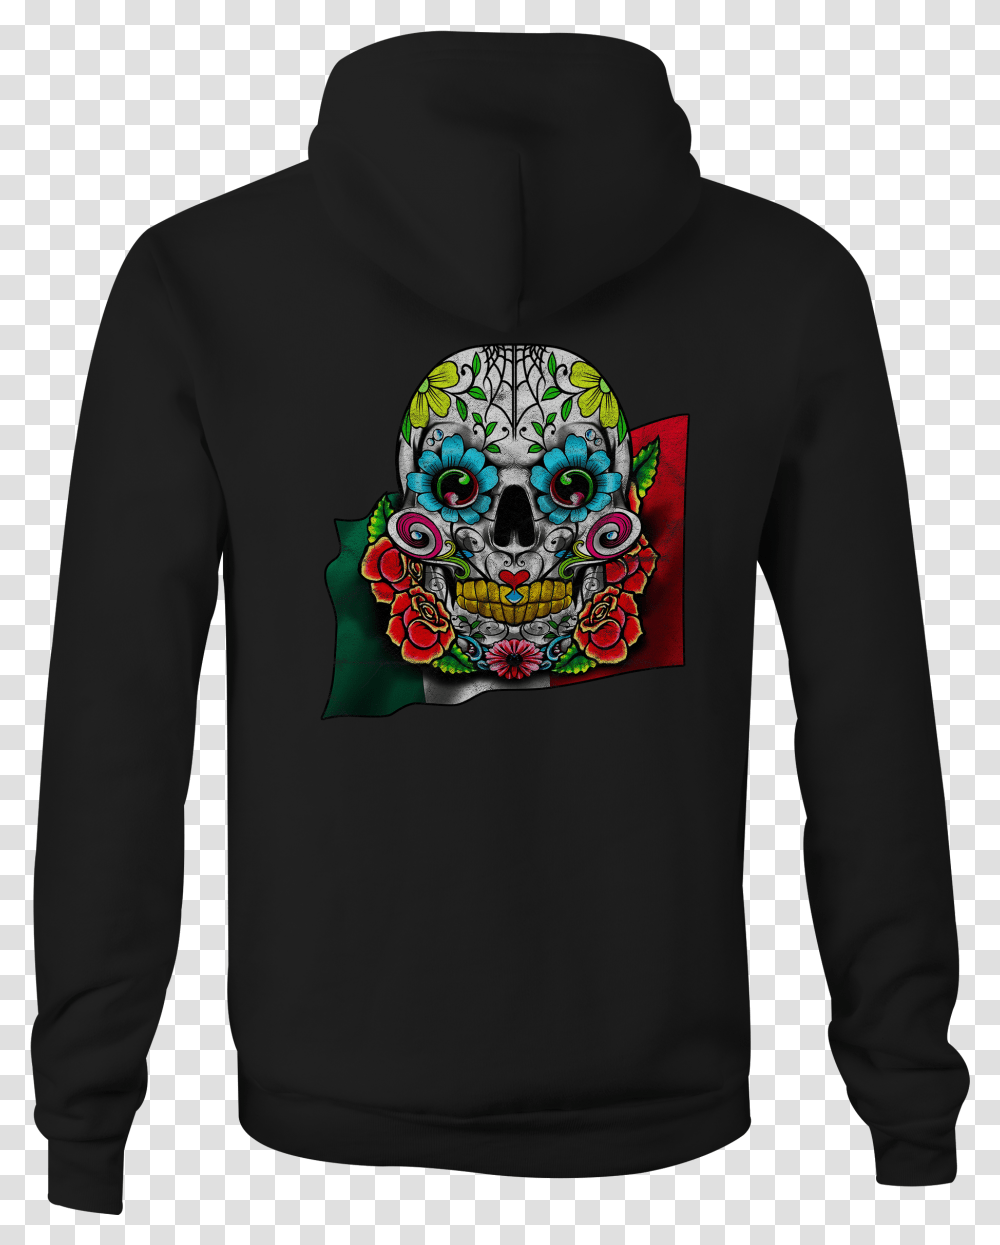 Details About Zip Up Hoodie Mexican Sugar Skull Hooded Sweatshirt Hoodie, Clothing, Apparel, Sleeve, Long Sleeve Transparent Png